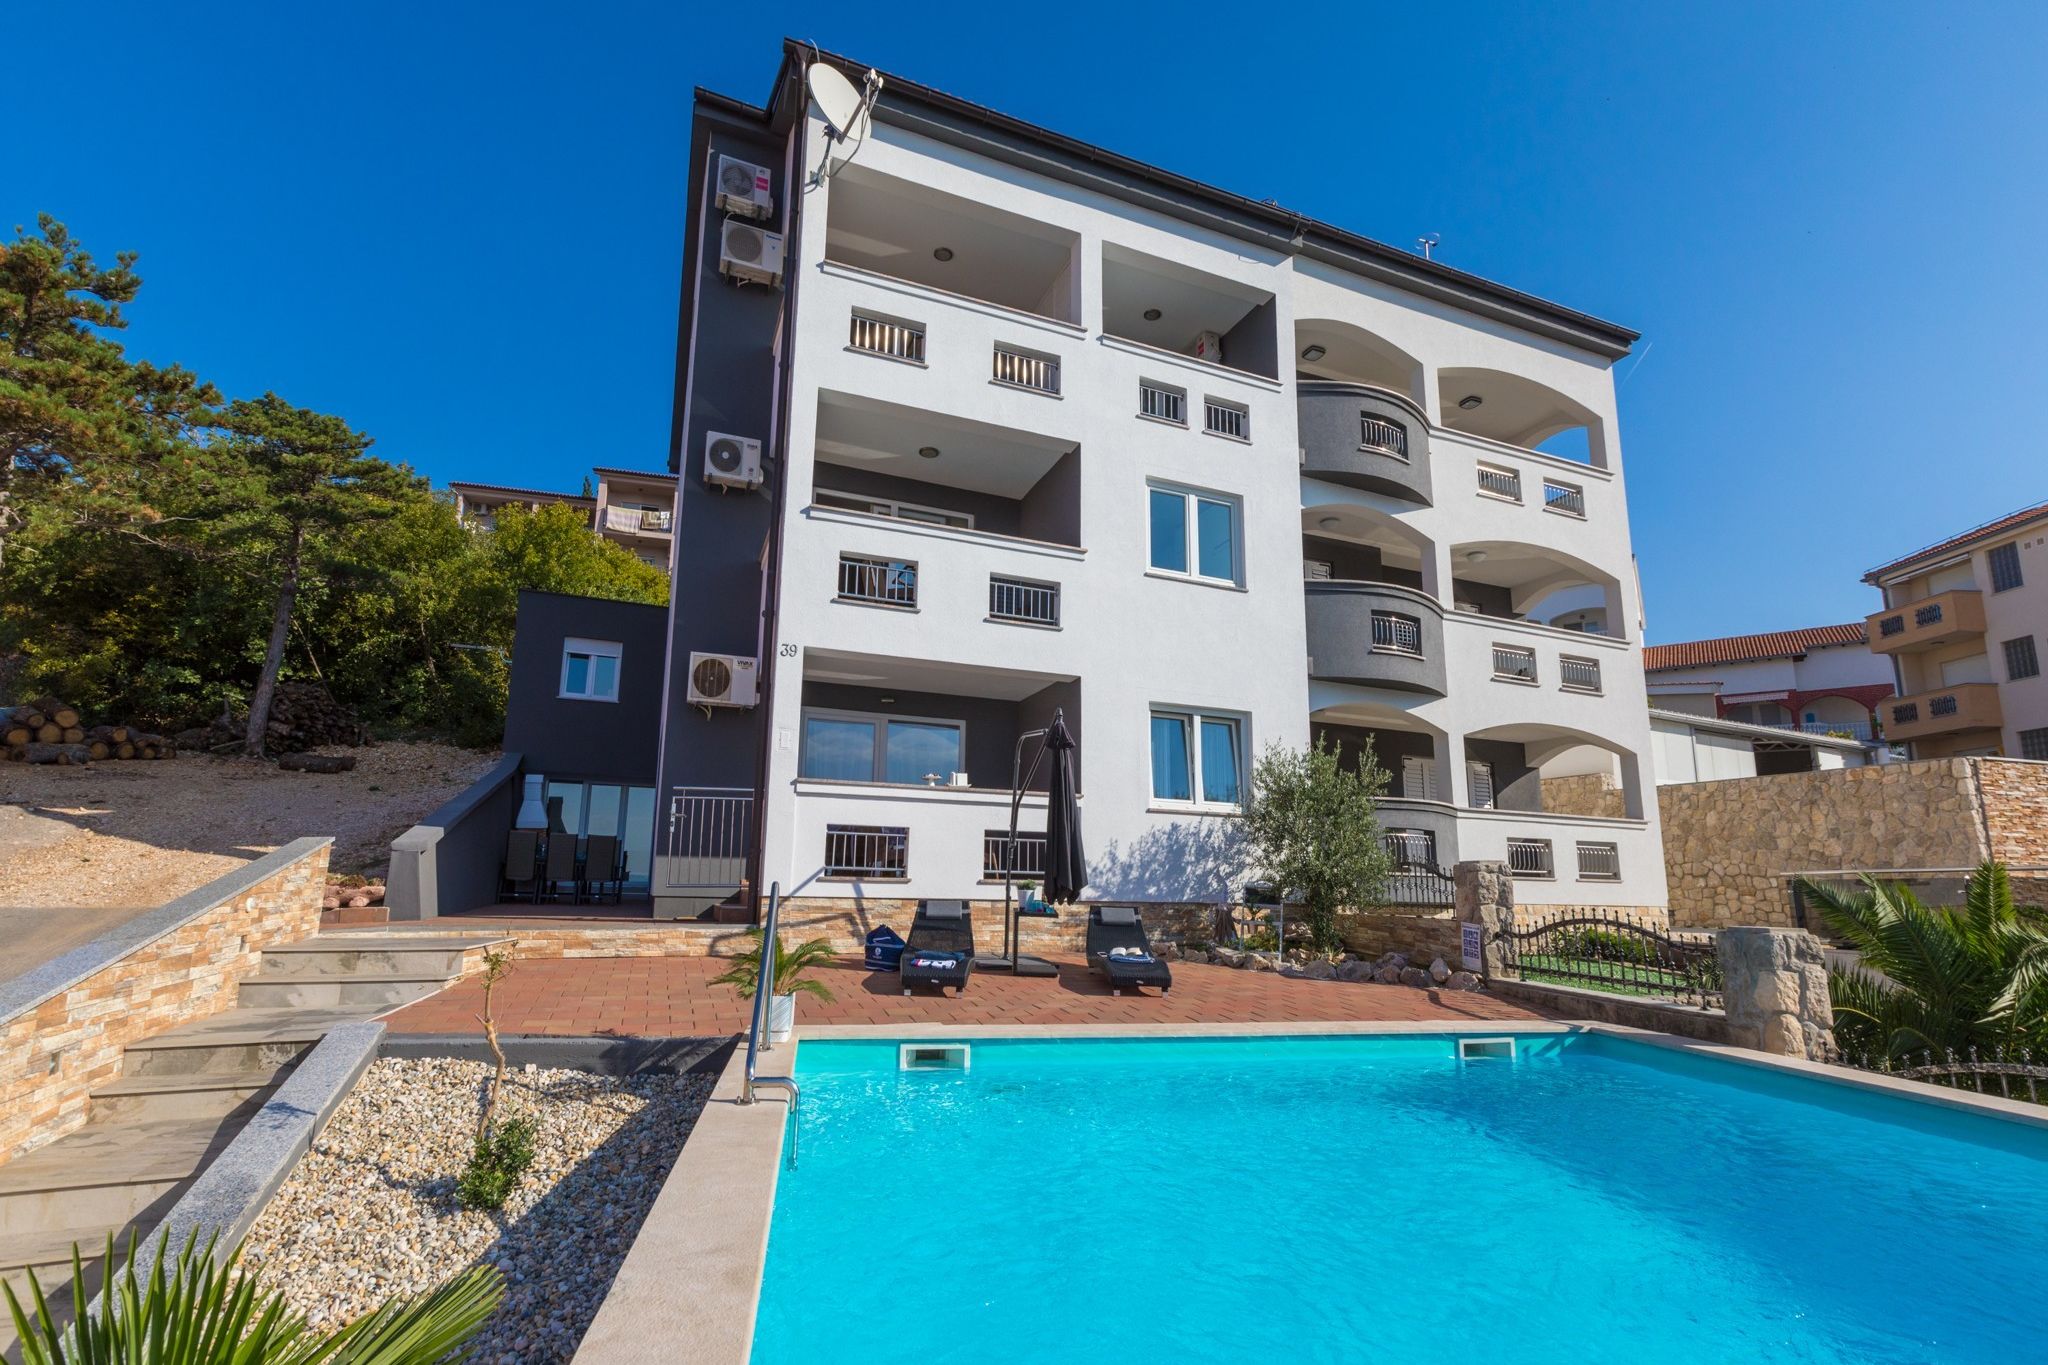 Knus appartement in Crikvenica met zwembad